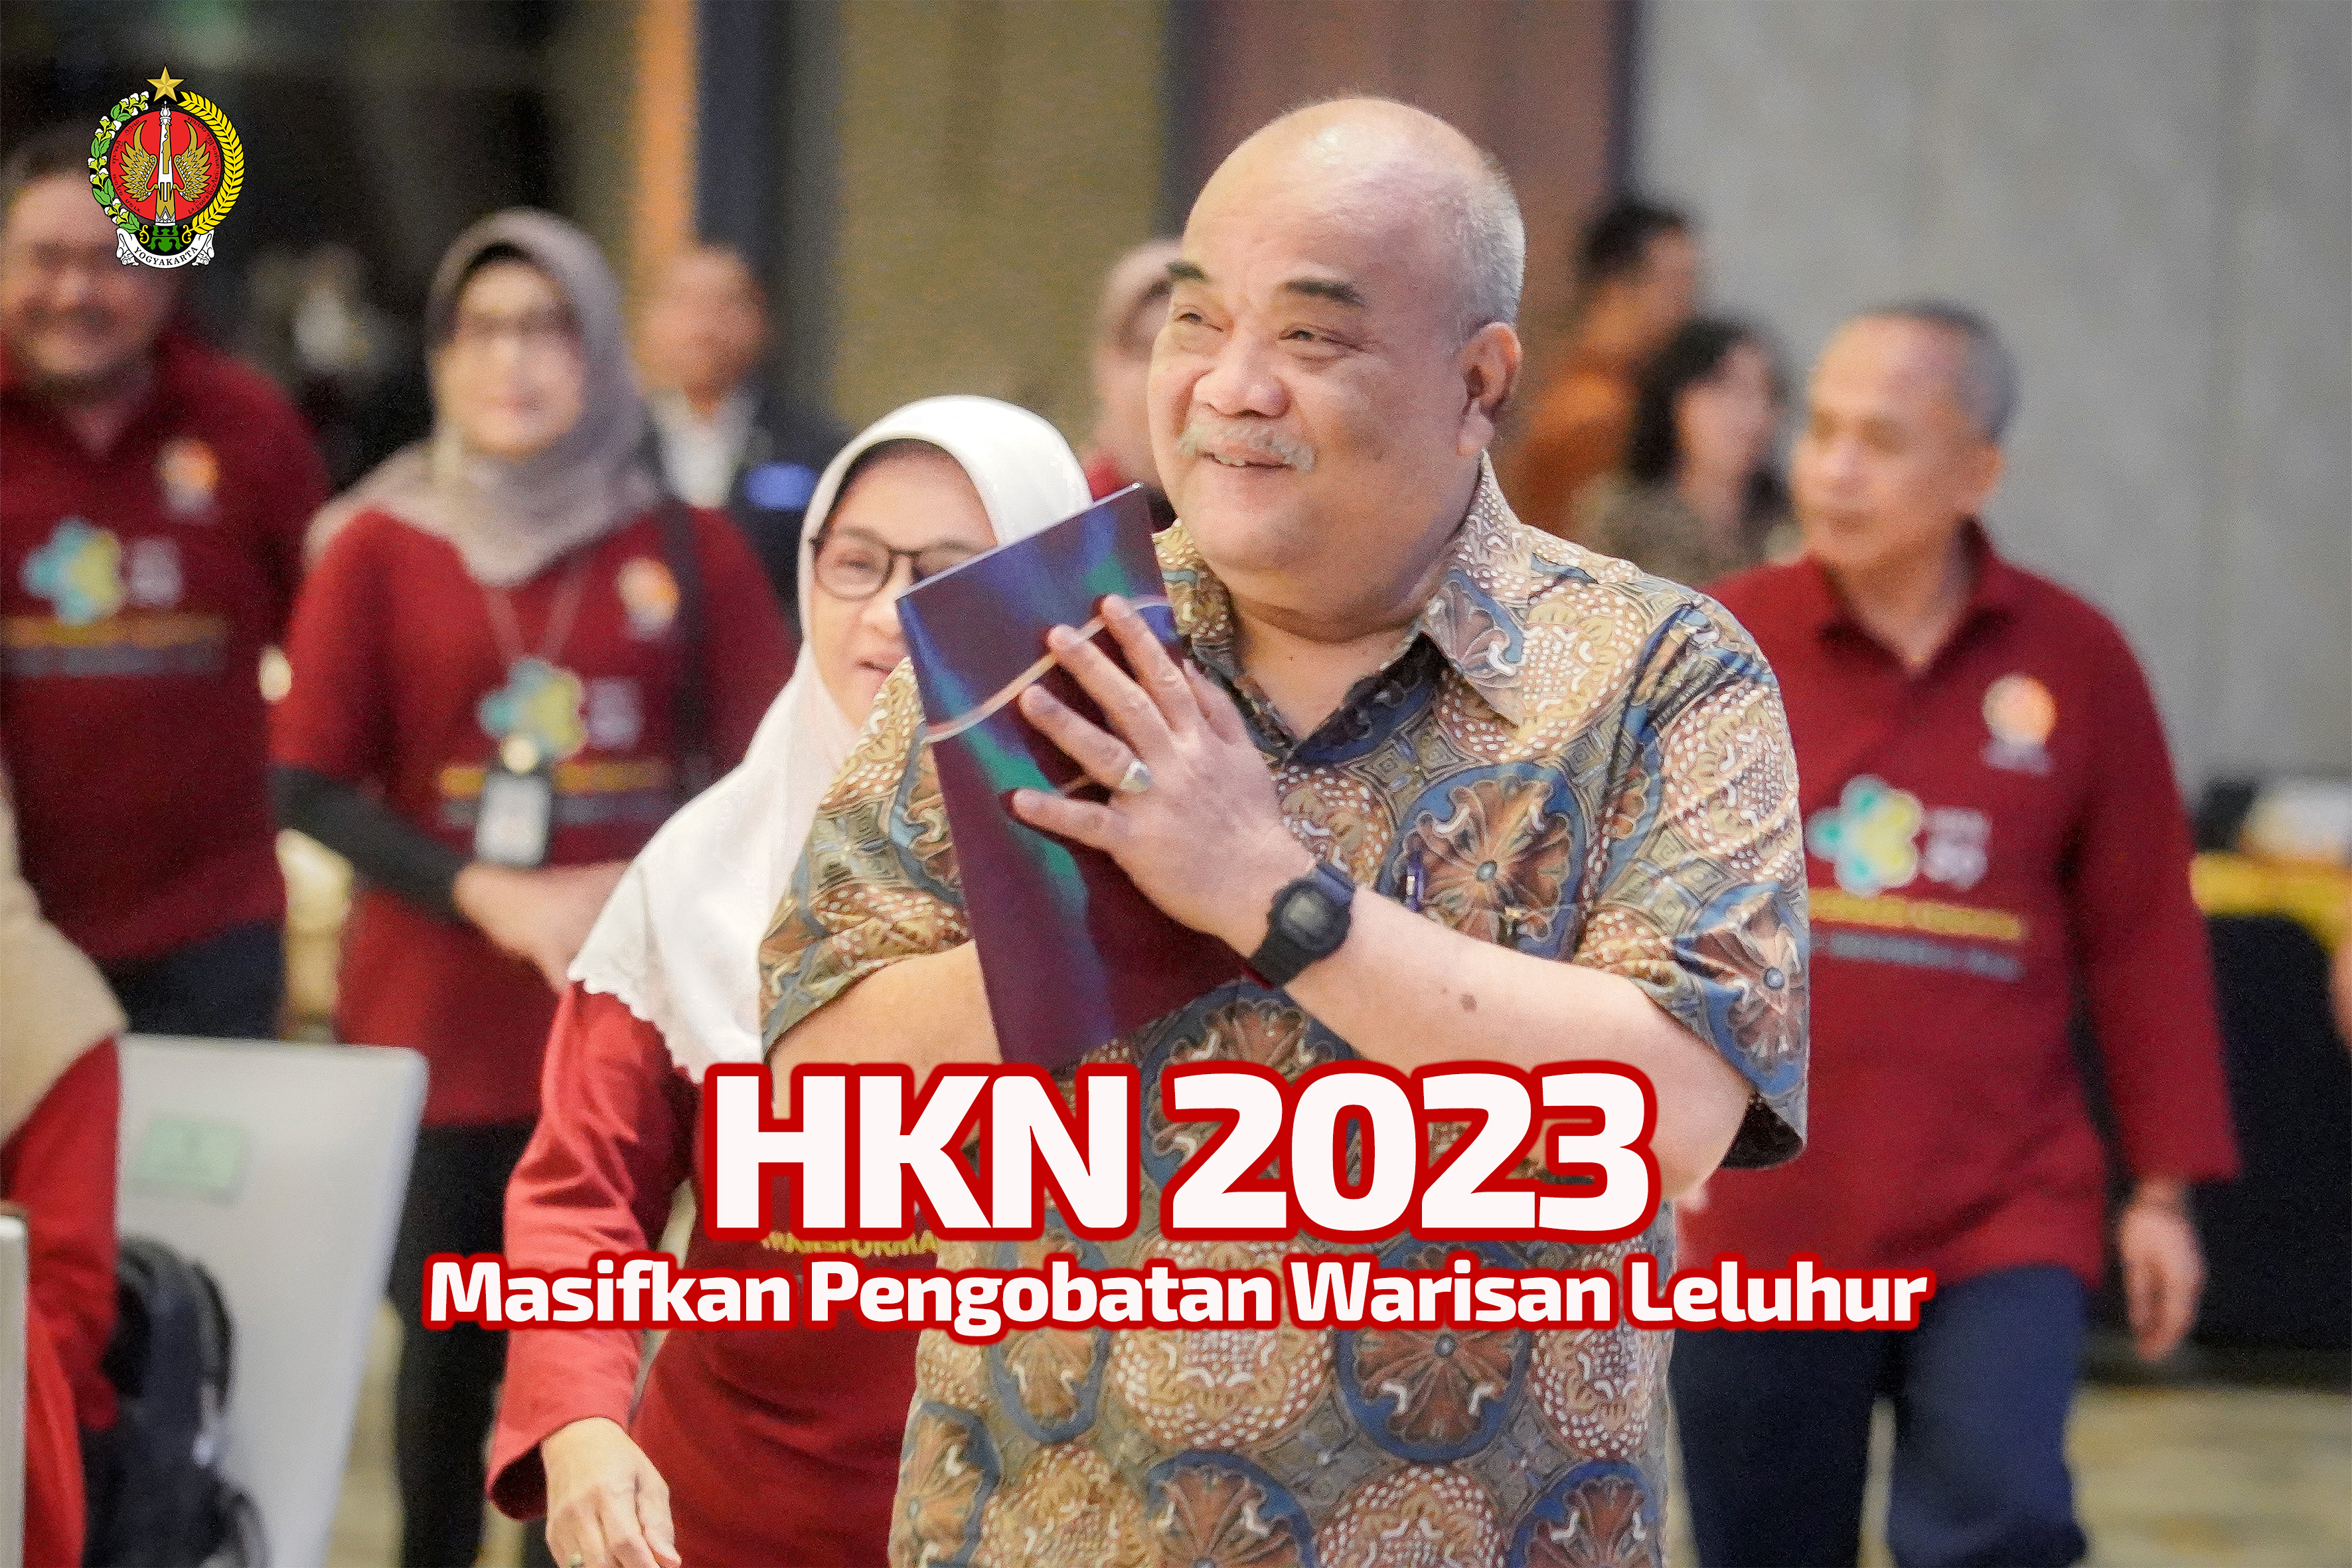  HKN 2023 Masifkan Pengobatan Warisan Leluhur